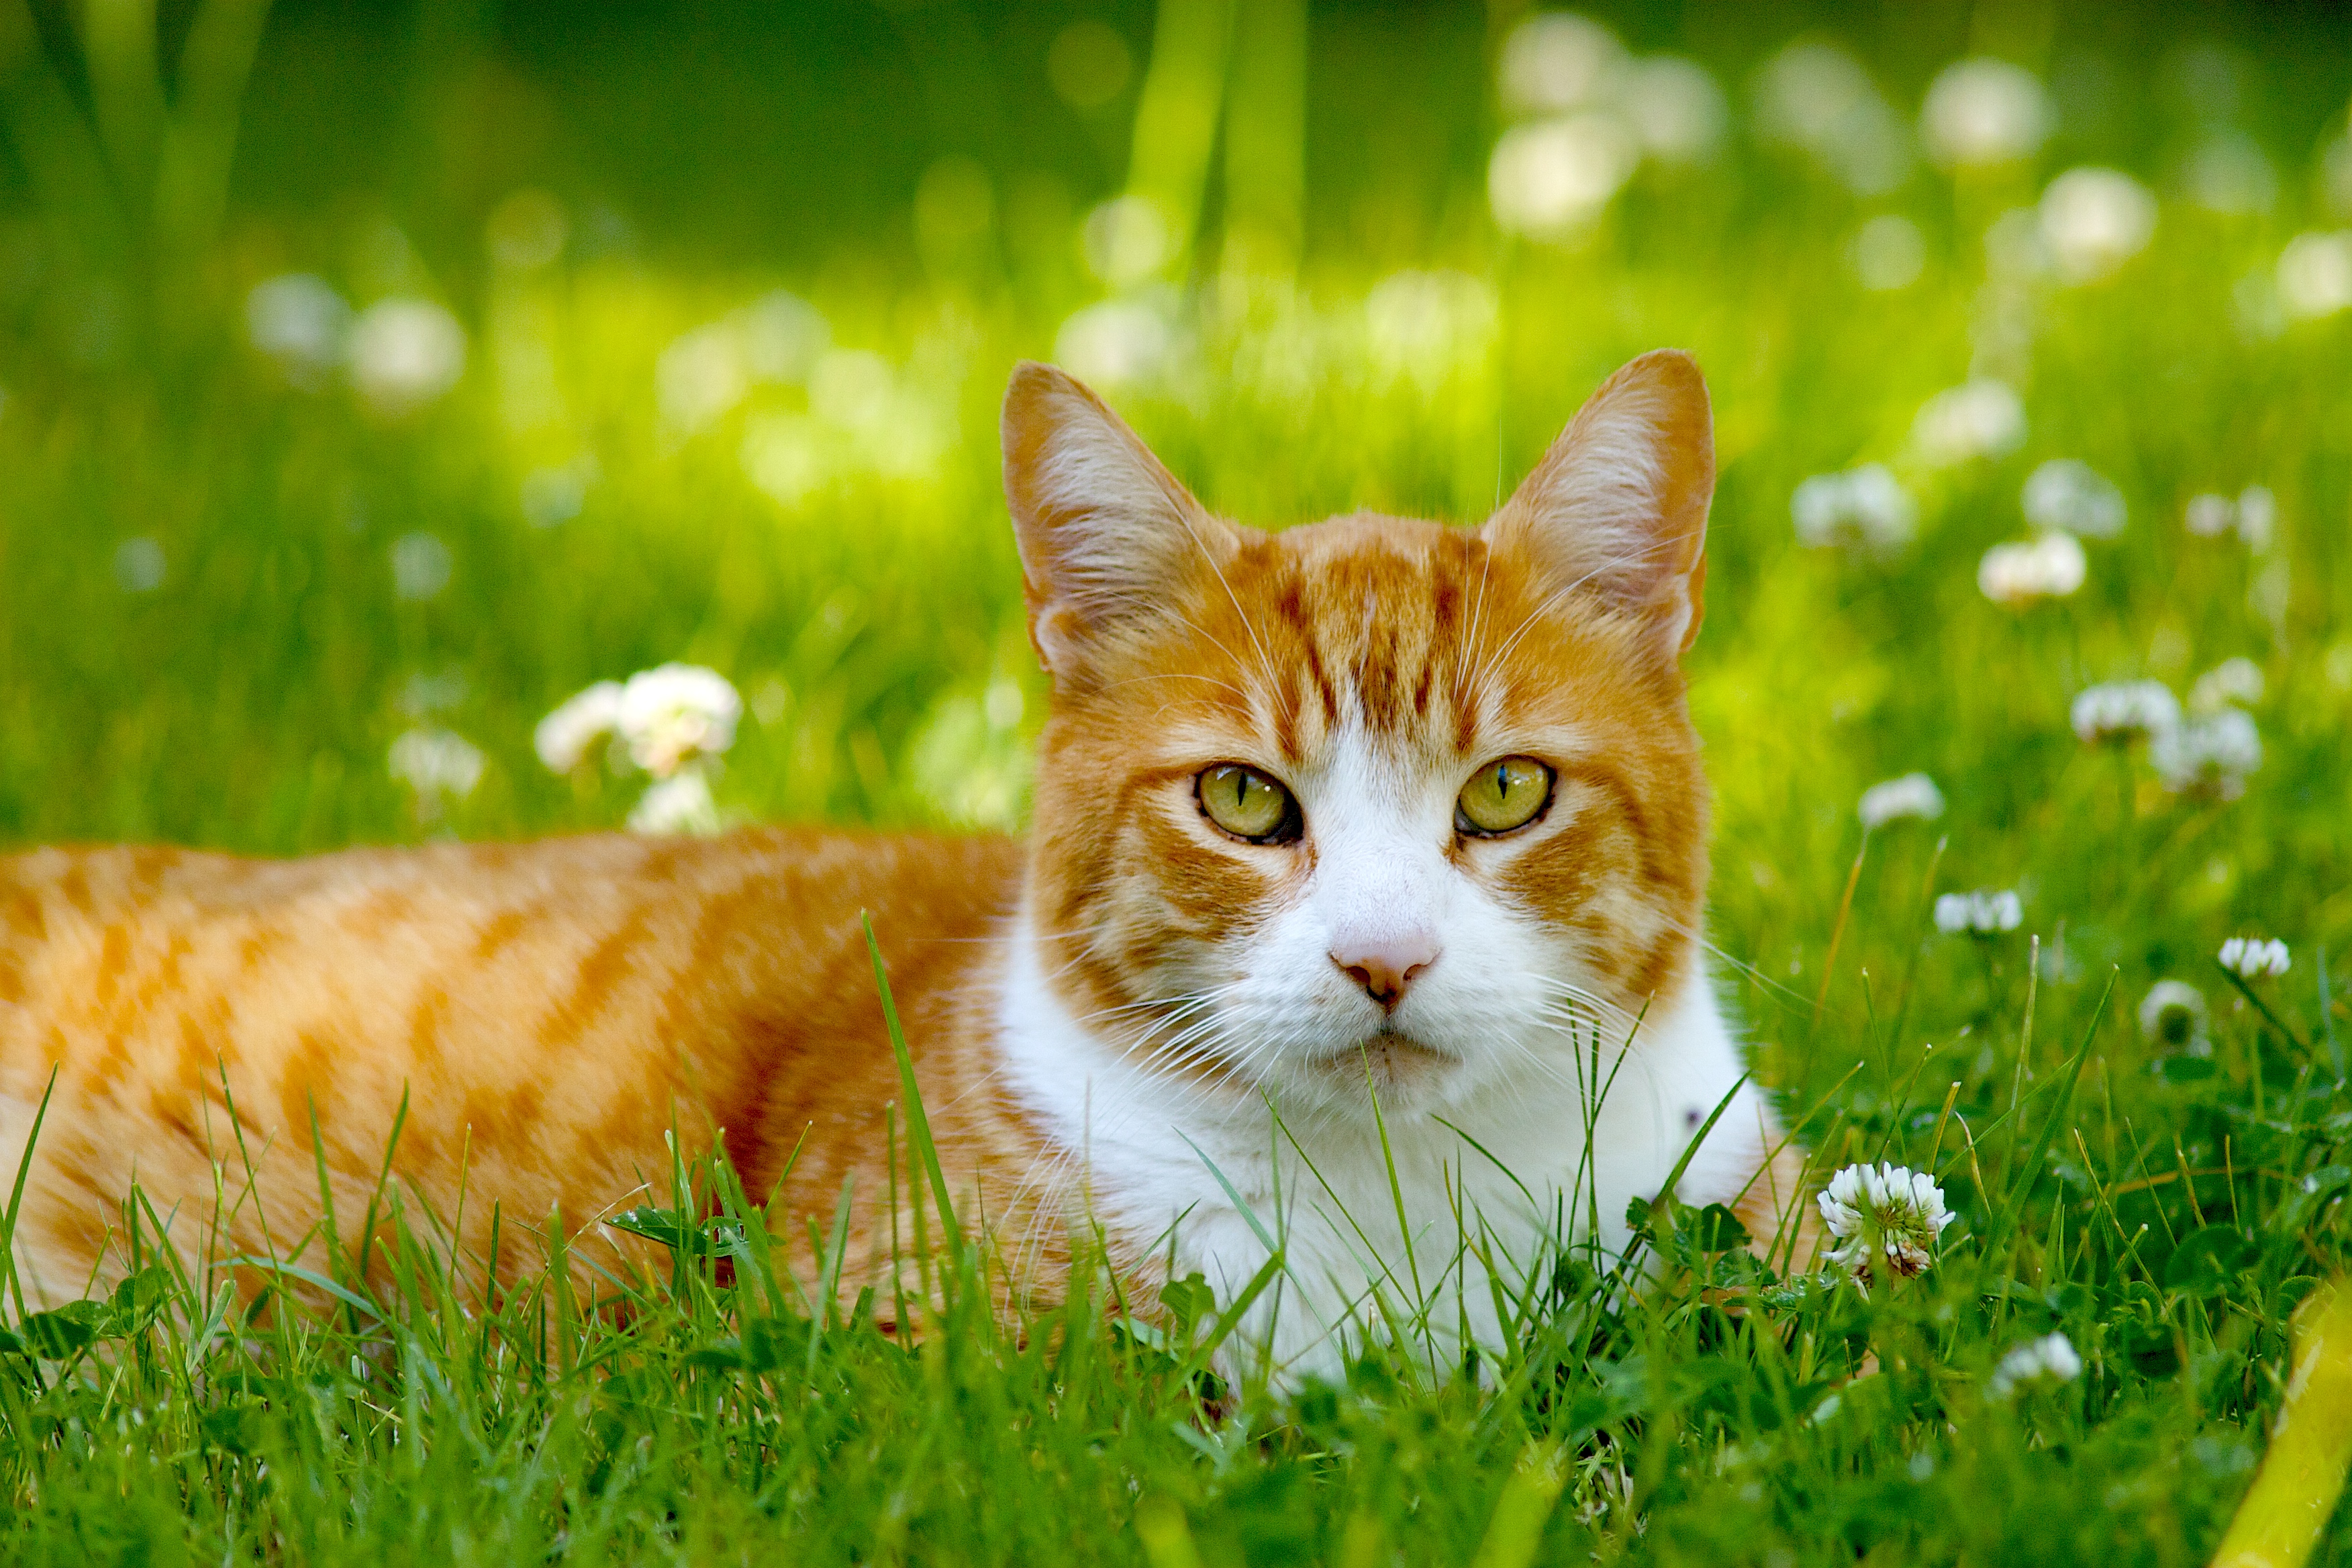 Cat in grass photo